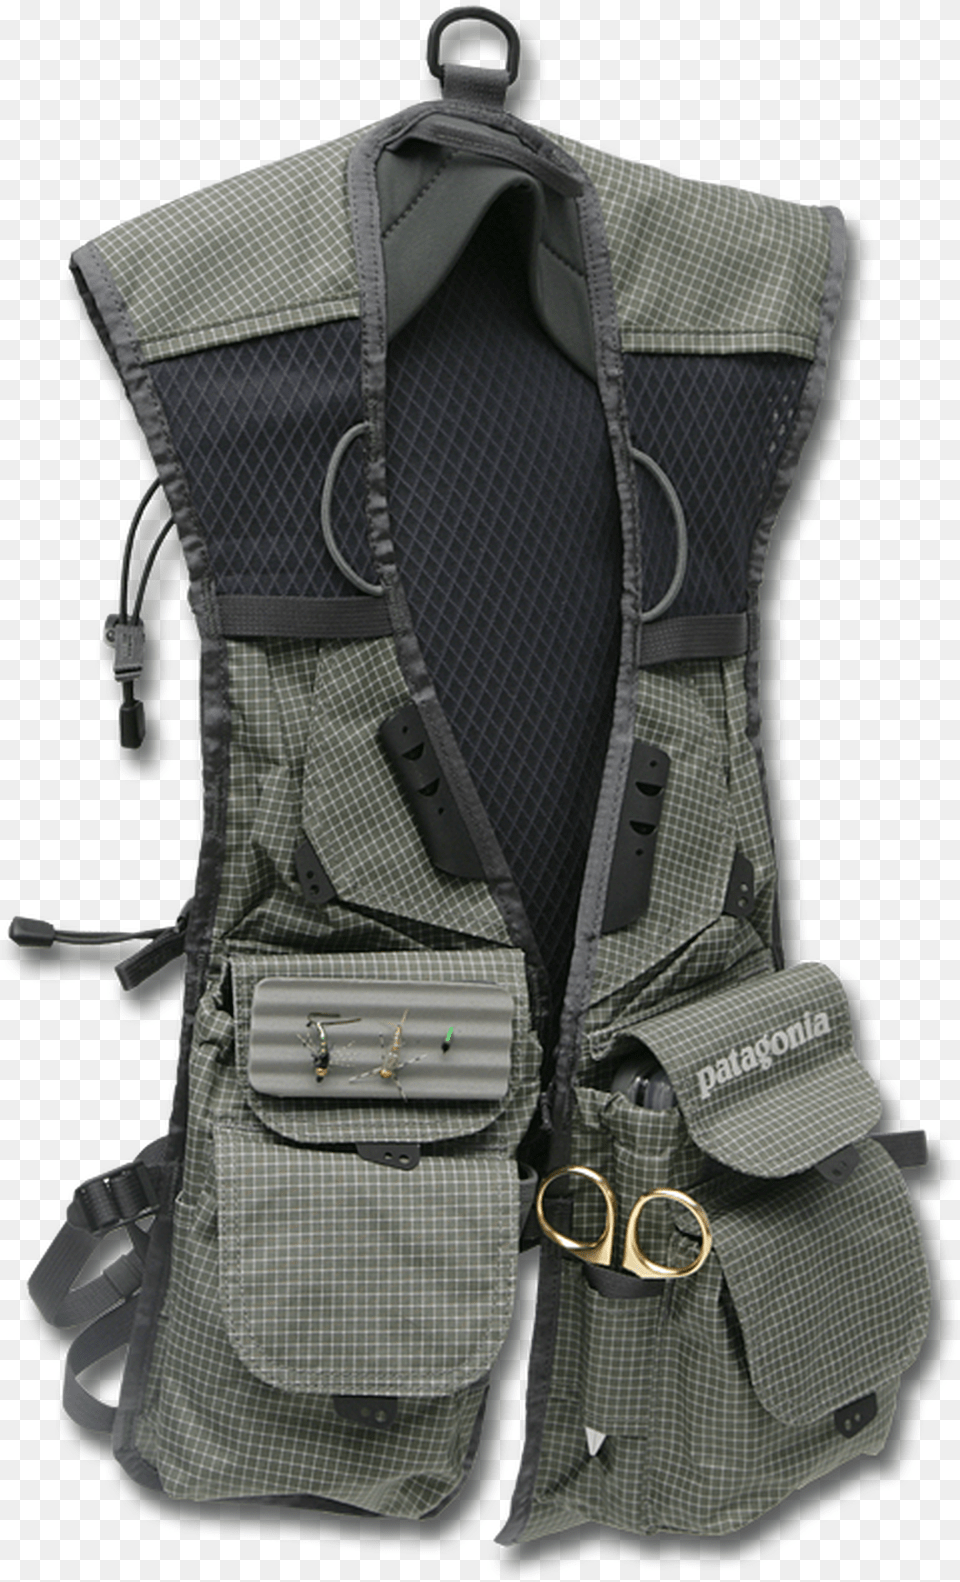 Patagonia Hybrid Pack Vest Garment Bag, Clothing, Lifejacket, Backpack Free Transparent Png